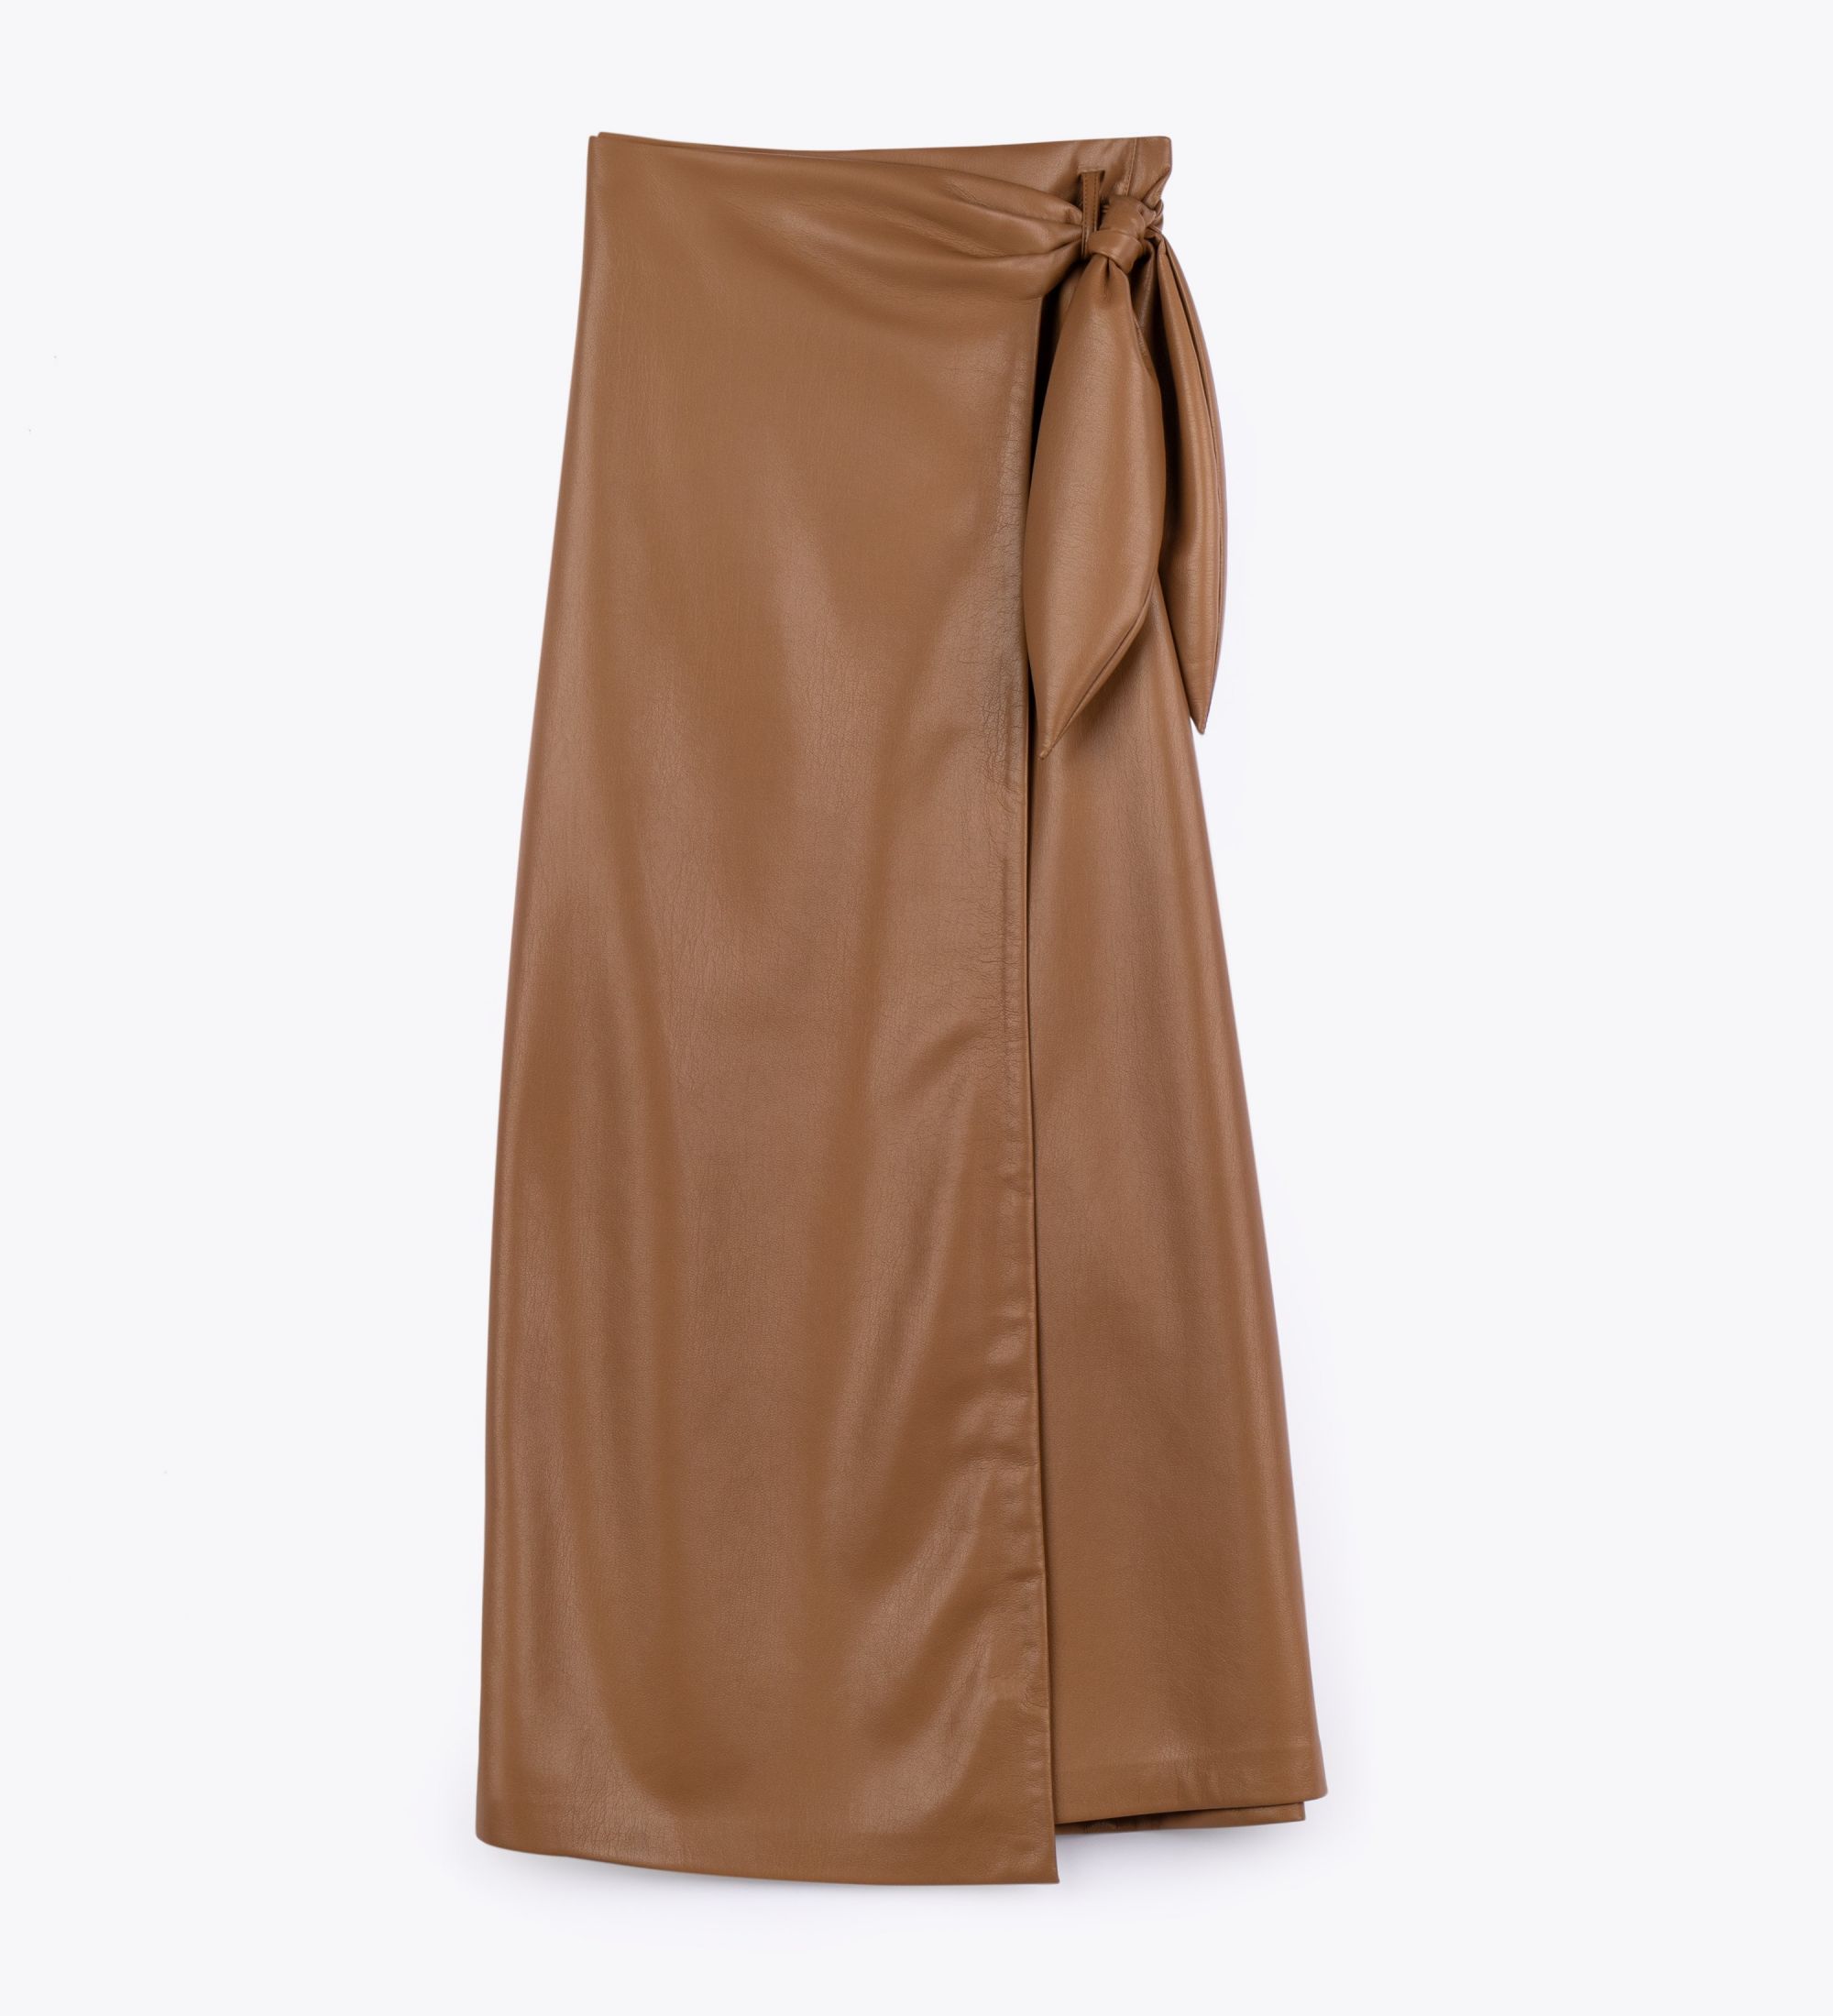 LEEZ Women Leather Skirt - Khaki